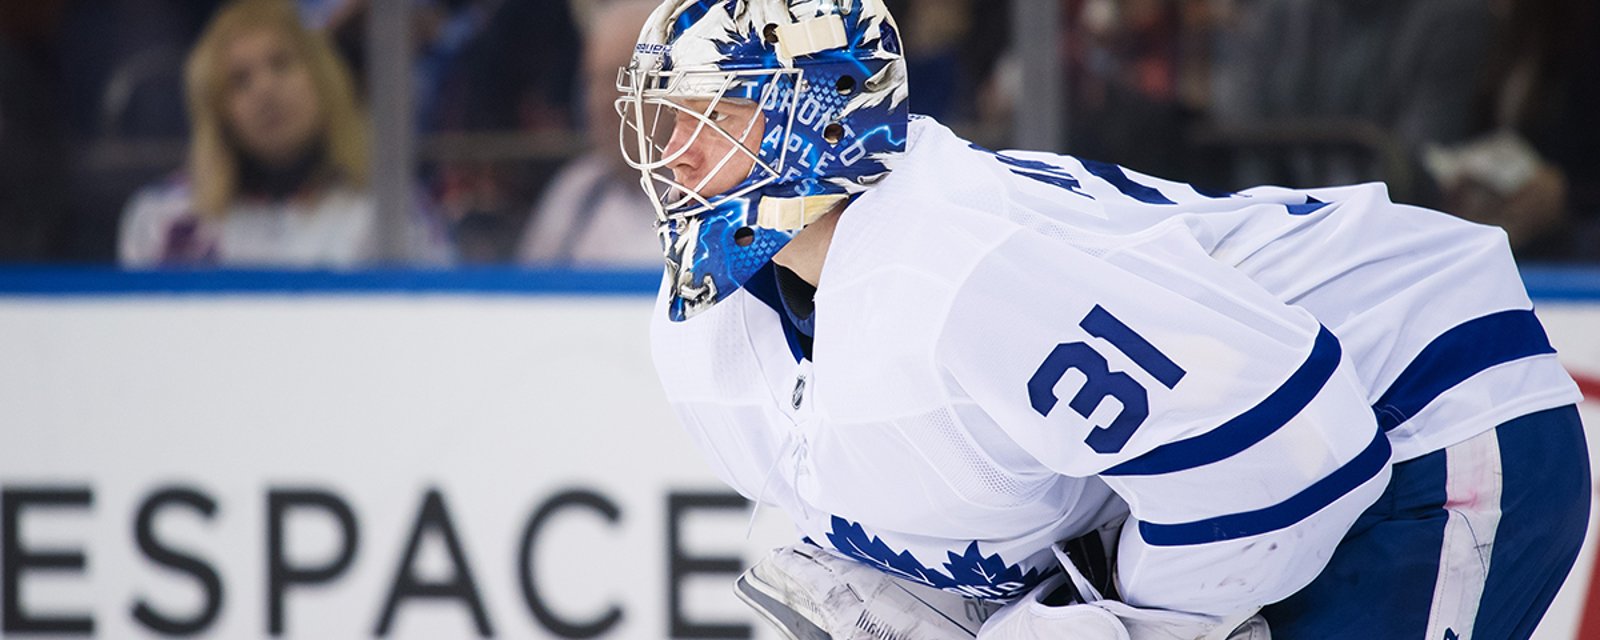 Leafs’ Andersen weighs in on goalie equipment debate